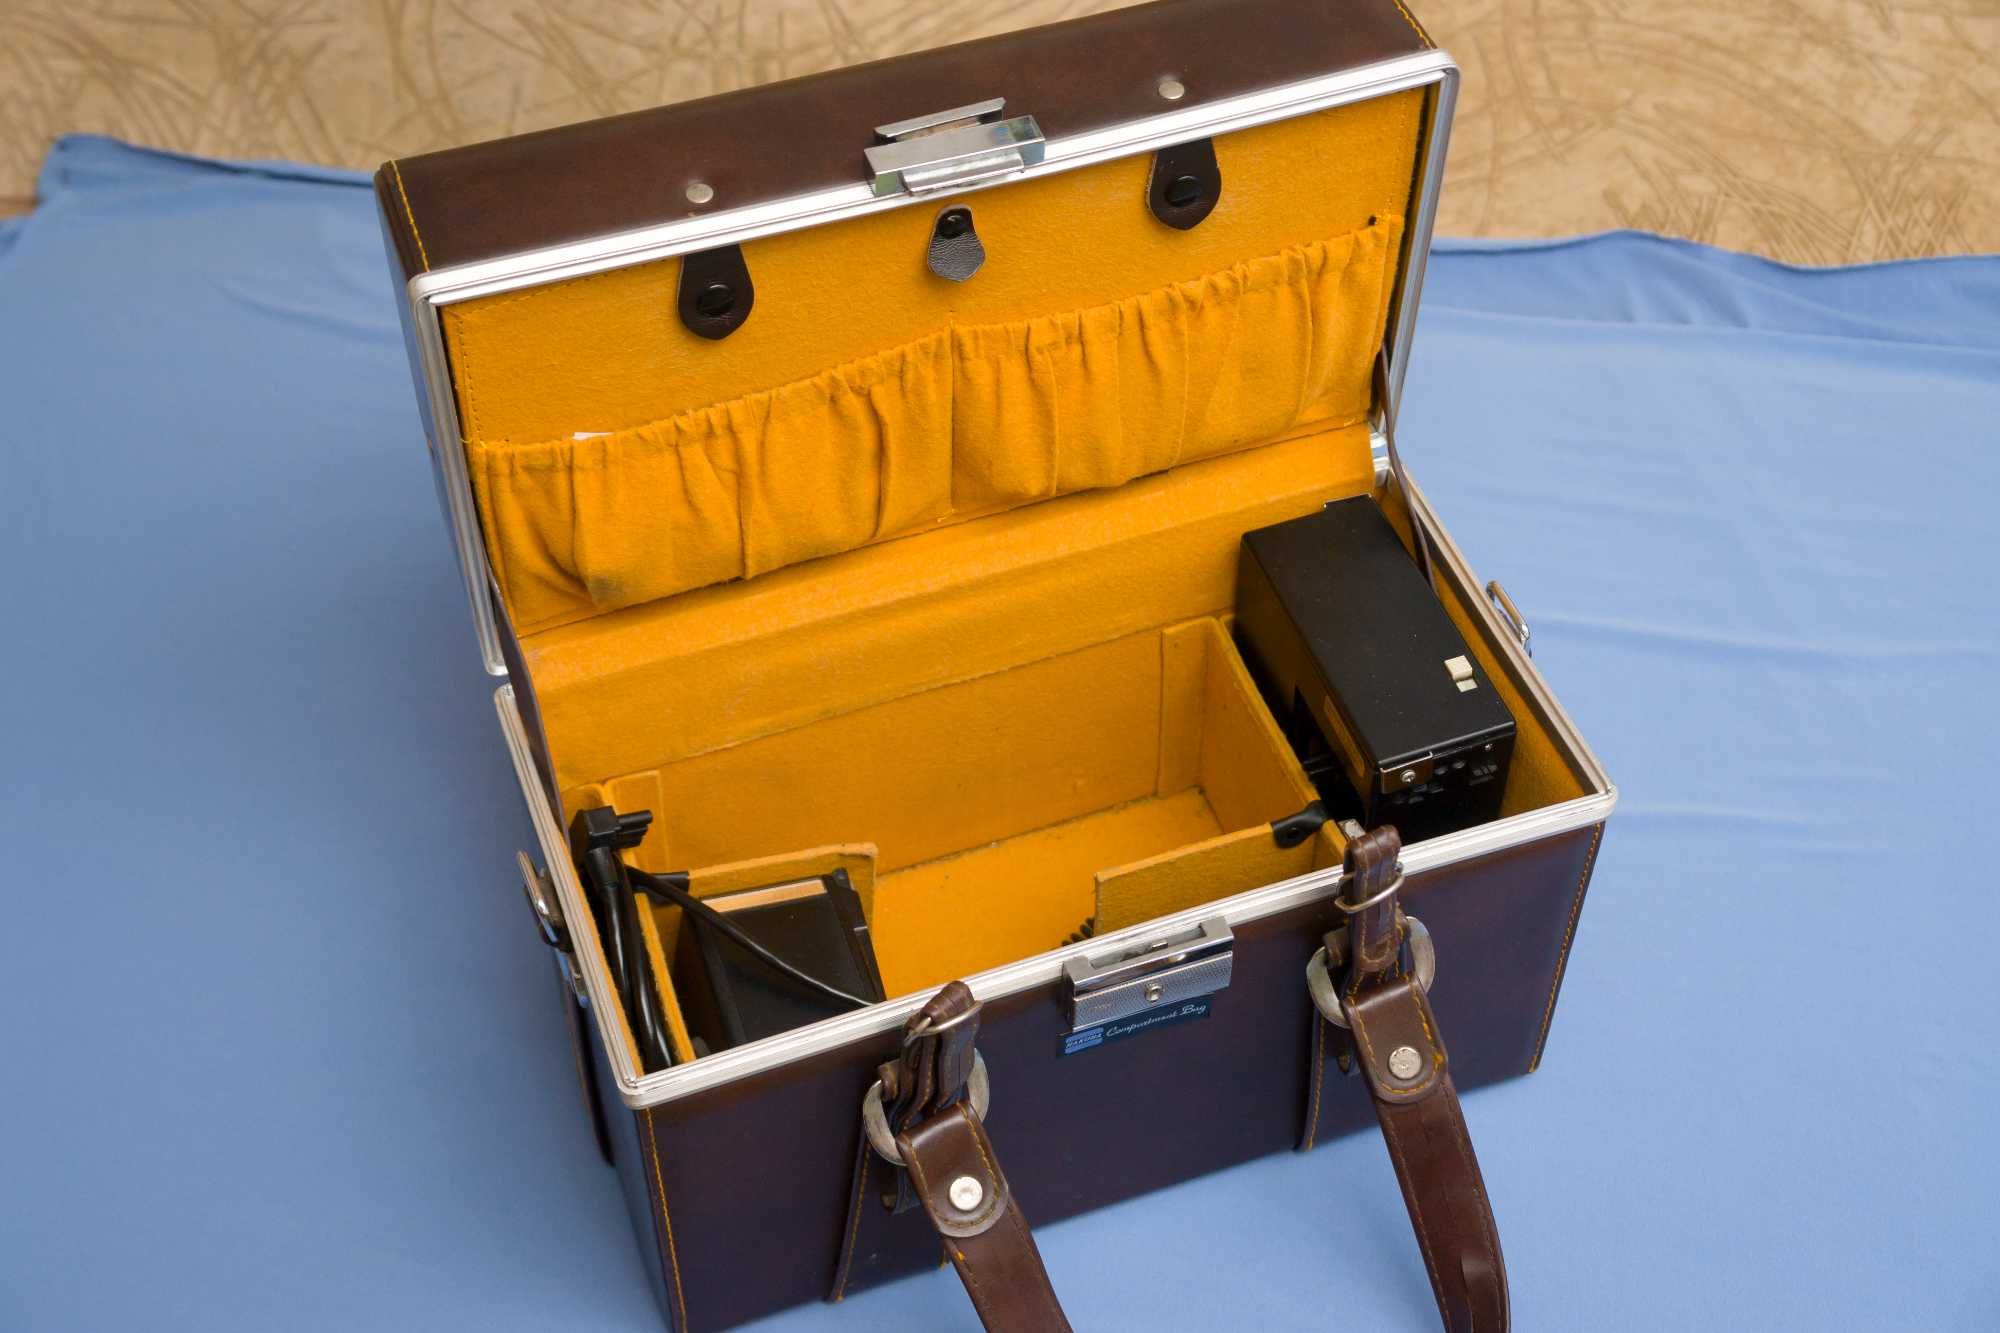 Вспышка Metz 60 CT-1 + сумка кофр Hakuba Compartment Bag (япония)